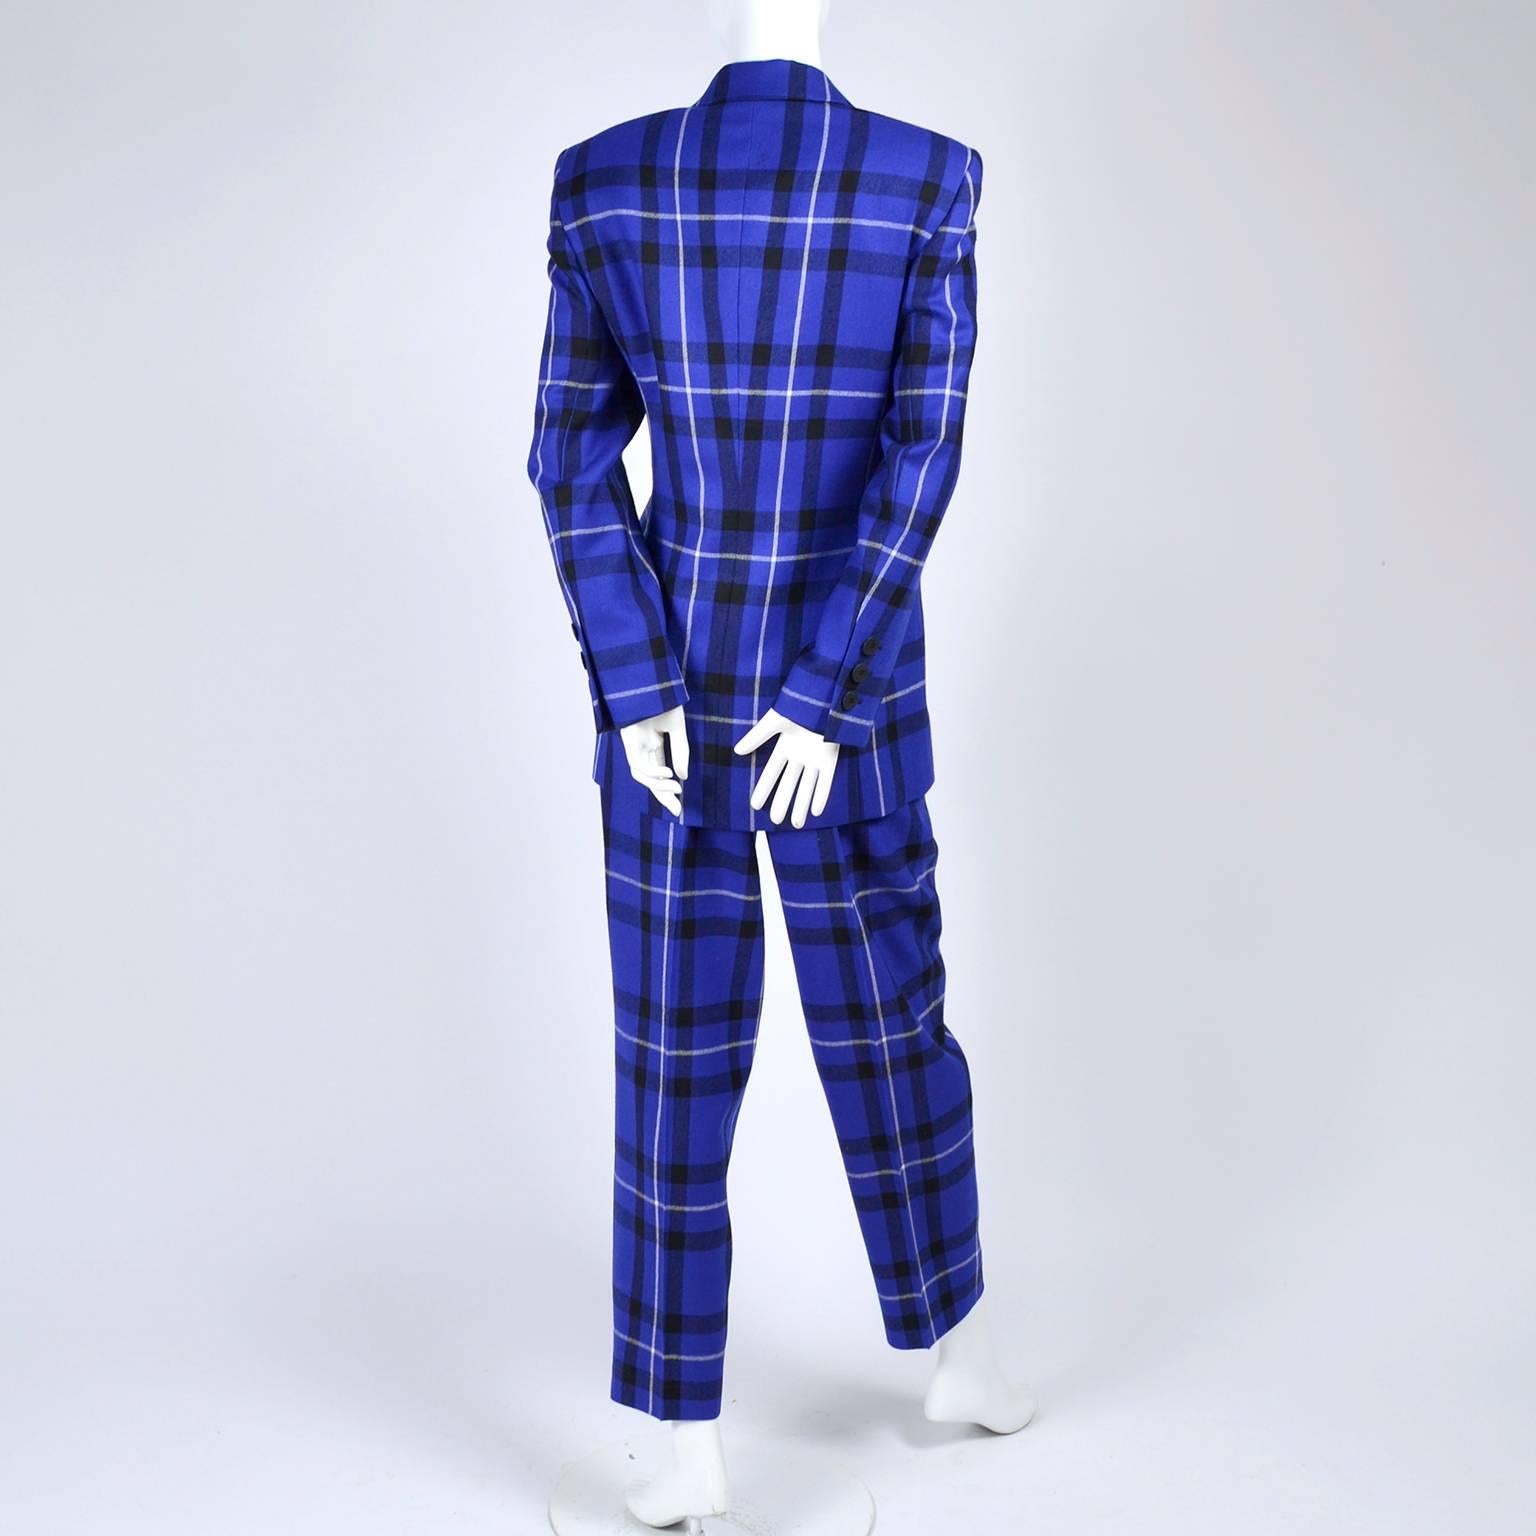 Escada Pantsuit in Blue Plaid Wool w/ Trousers & Blazer Jacket by Margaretha Ley 1